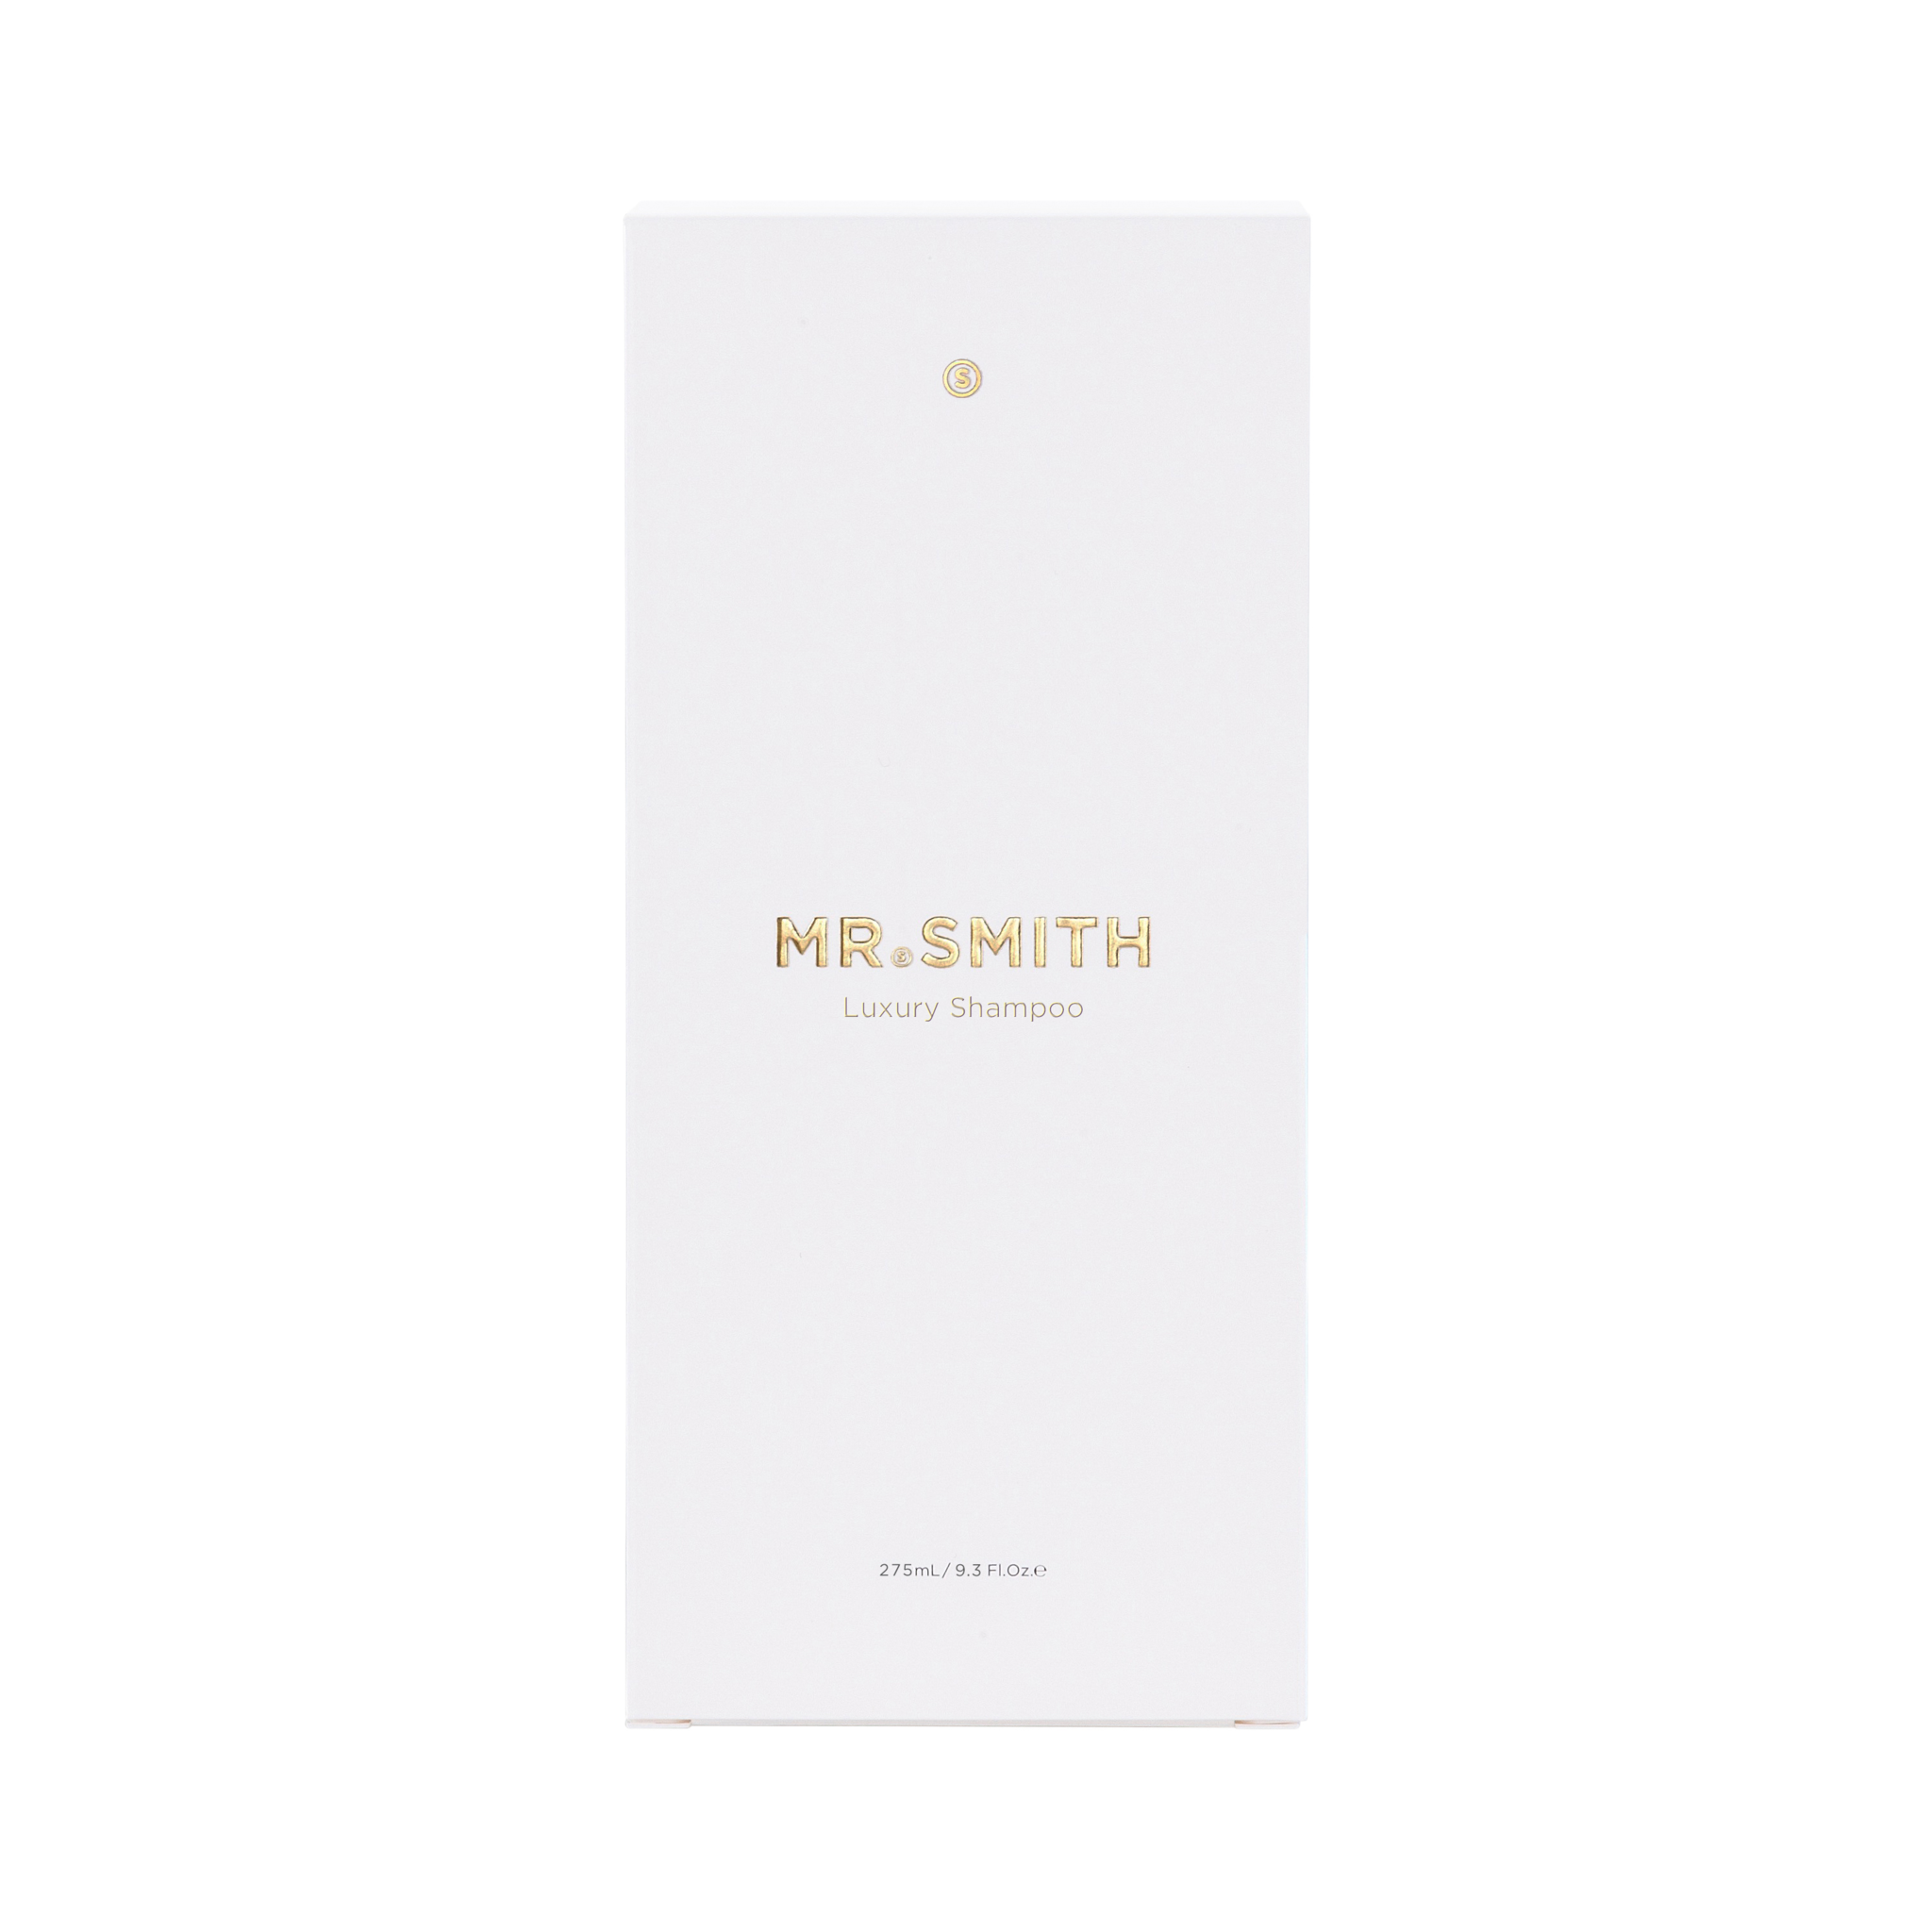 MR. SMITH Luxury Shampoo - 275 ml - doet het haar diep voeden en verzorgen